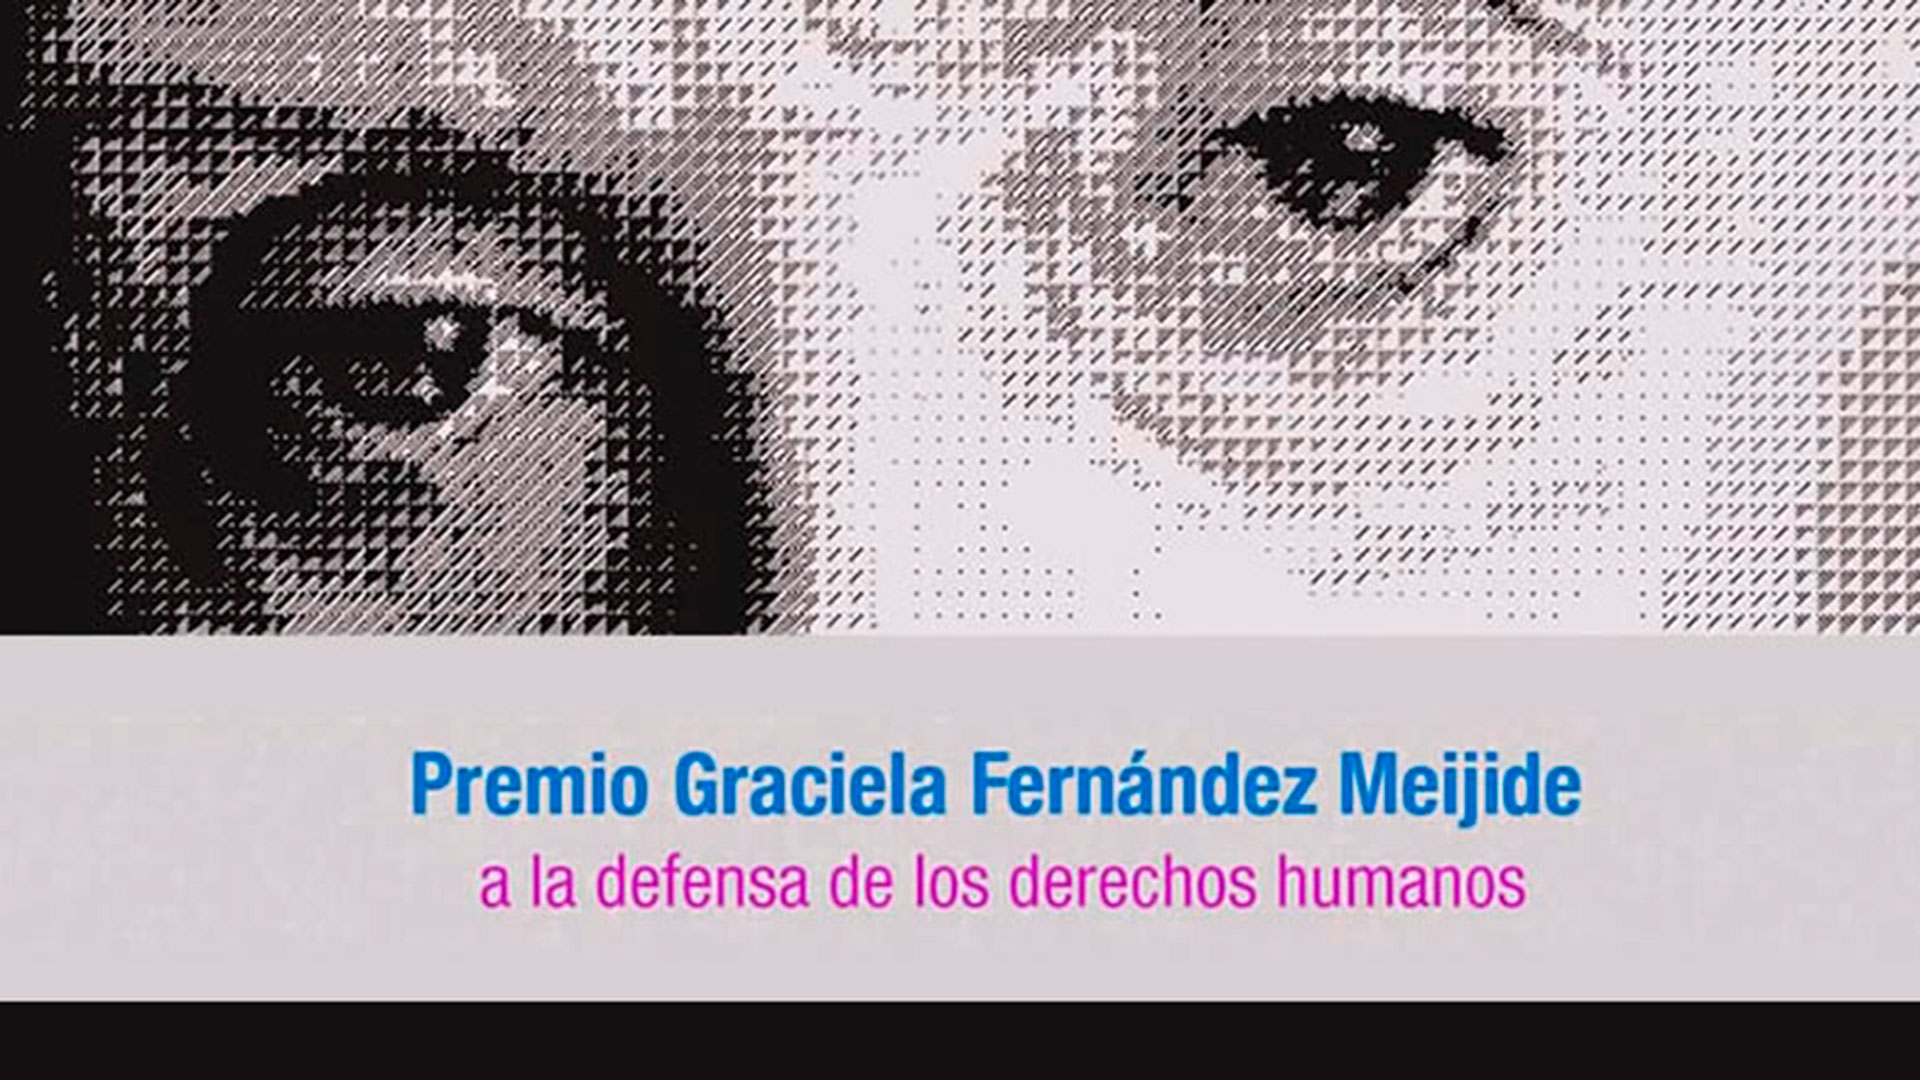 El Premio Graciela Fernández Meijide fue otorgado a una organización de Guatemala y un activista cubano